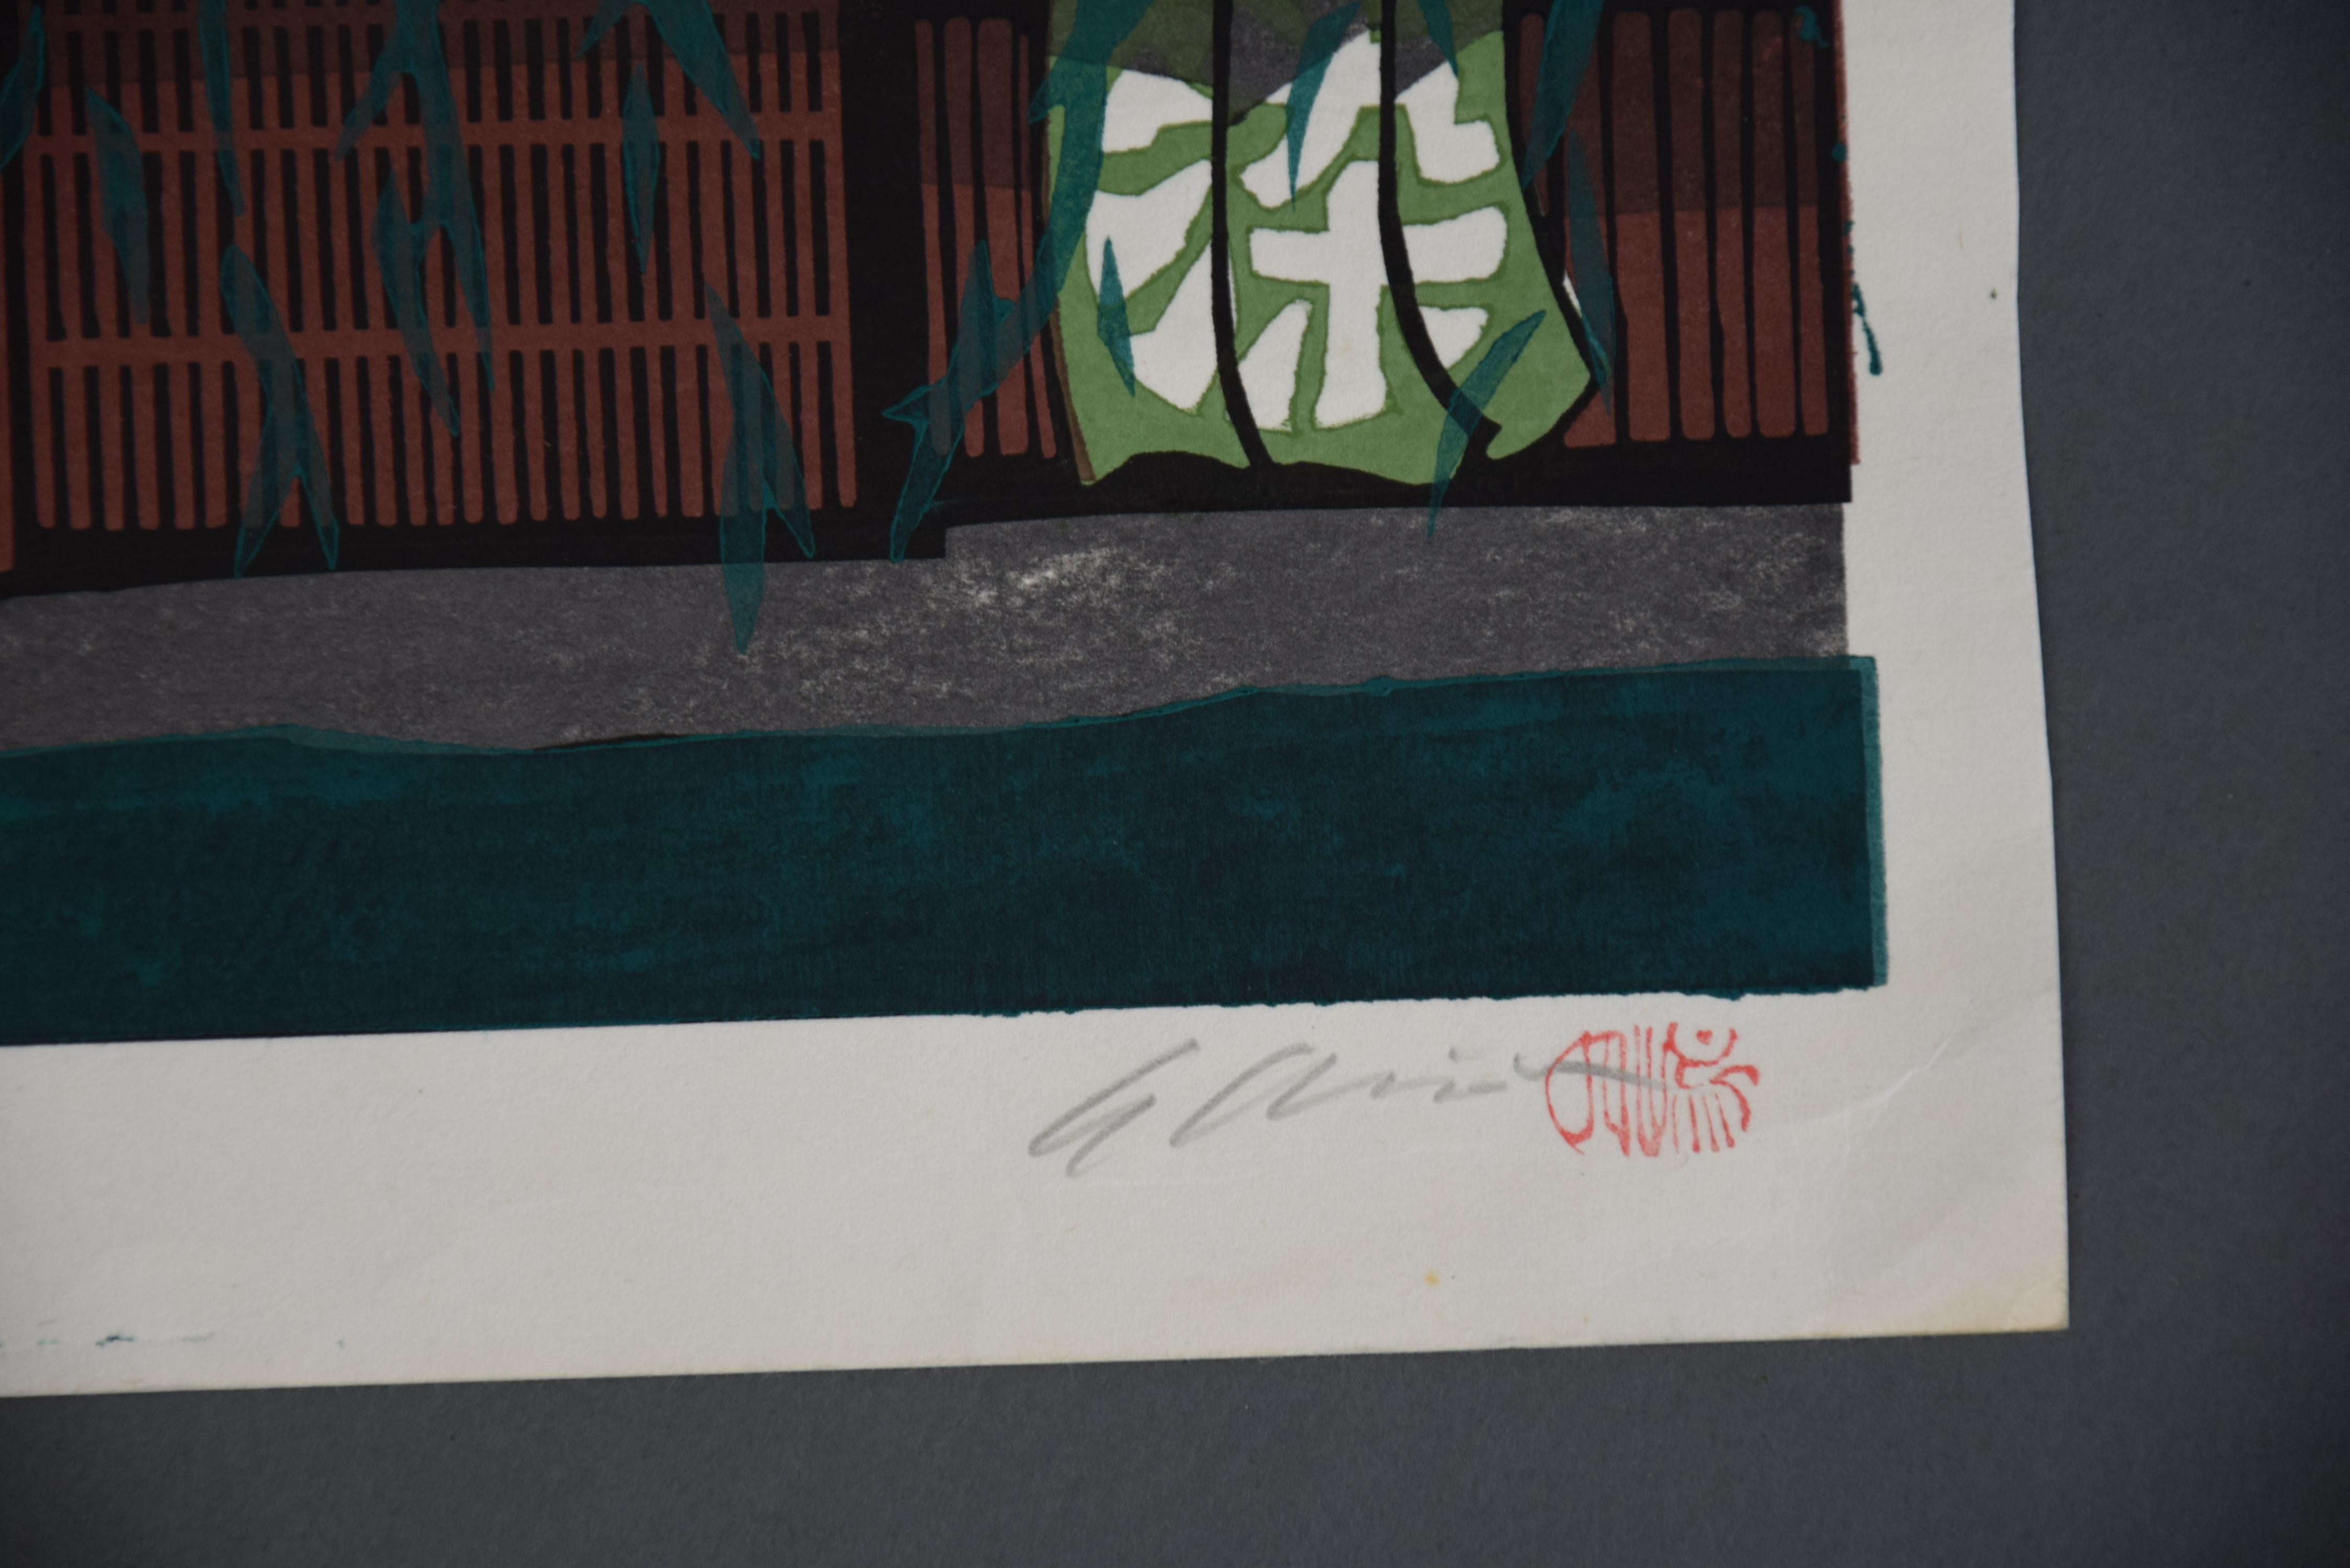 Schöner japanischer Farbholzschnitt von Katsuyuki Nishijima, geboren 1945 in Kyoto.
Vom Künstler in Bleistift signiert, betitelt und nummeriert.

Nishijima liebt Ukiyoe (Farbholzschnitte) seit seiner Kindheit. So wurde er natürlich zum